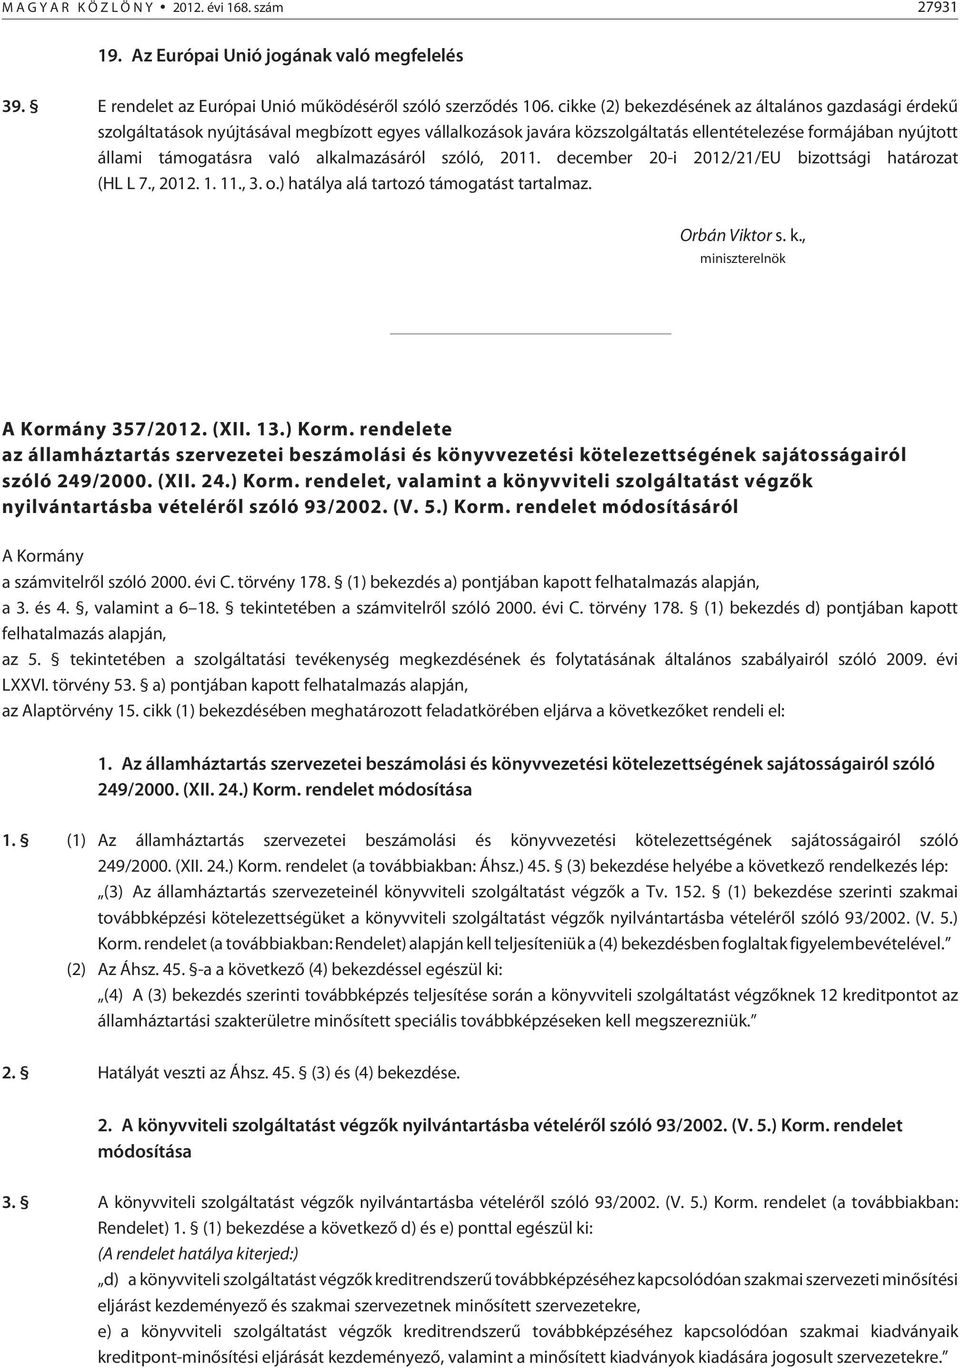 alkalmazásáról szóló, 2011. december 20-i 2012/21/EU bizottsági határozat (HL L 7., 2012. 1. 11., 3. o.) hatálya alá tartozó támogatást tartalmaz. Orbán Viktor s. k.